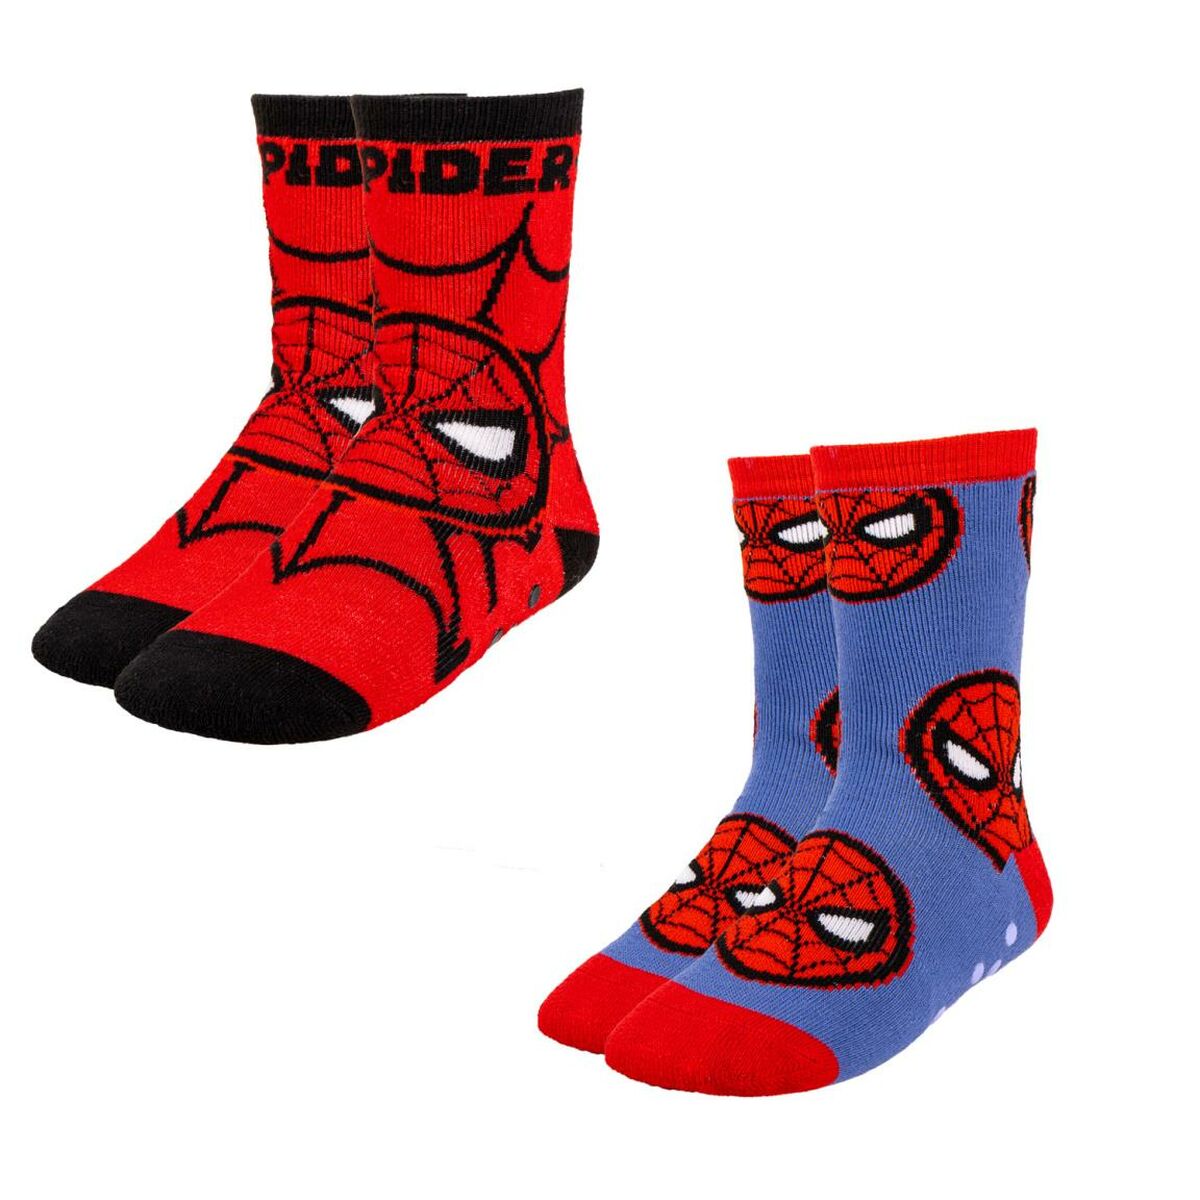 Chaussettes Antidérapantes Spiderman 2 Unités Multicouleur